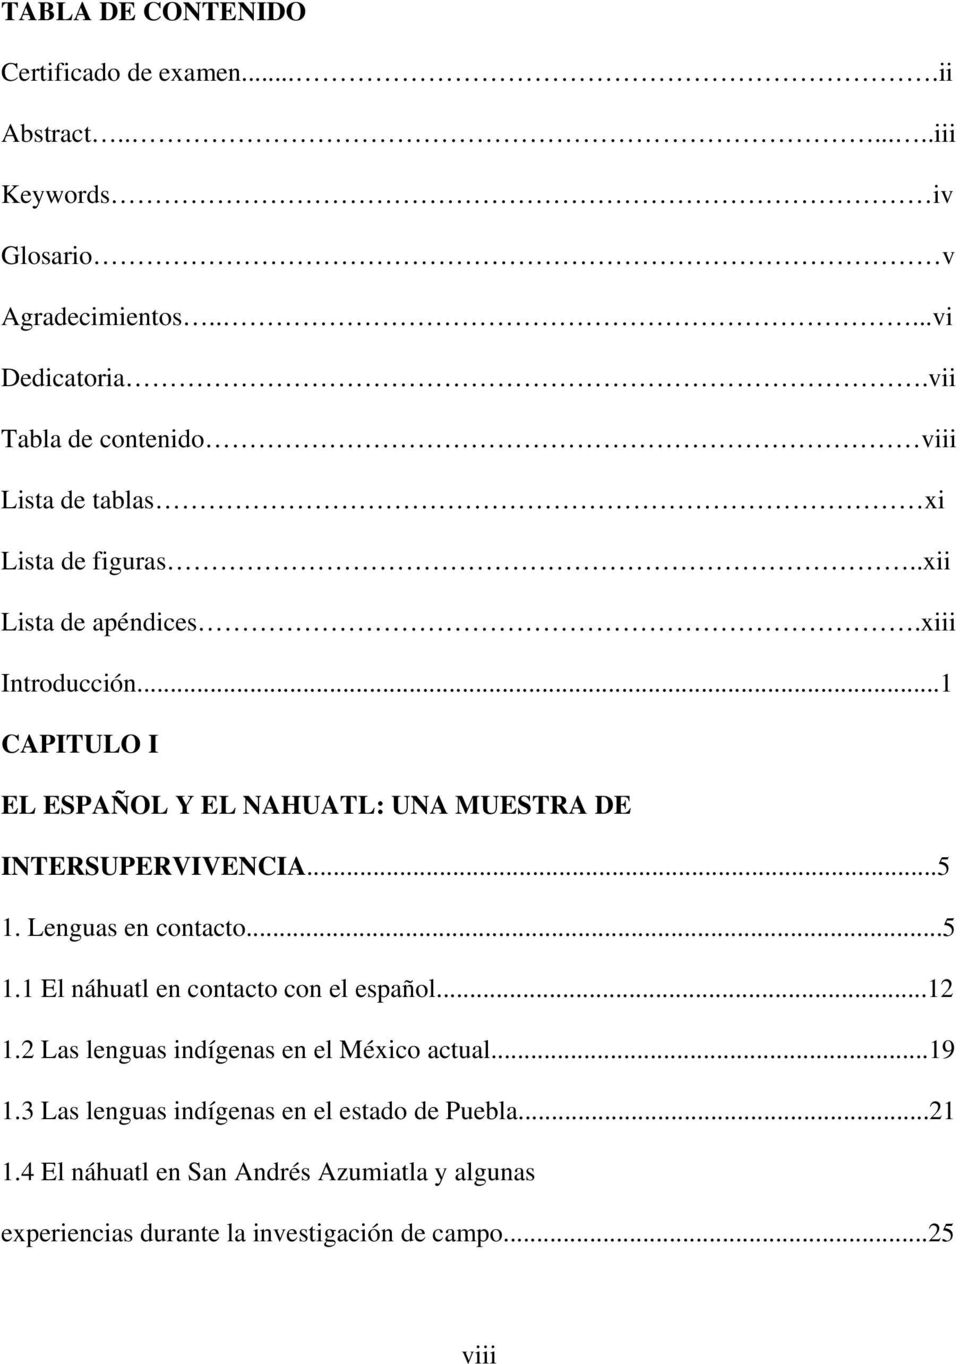 ..1 CAPITULO I EL ESPAÑOL Y EL NAHUATL: UNA MUESTRA DE INTERSUPERVIVENCIA...5 1. Lenguas en contacto...5 1.1 El náhuatl en contacto con el español.